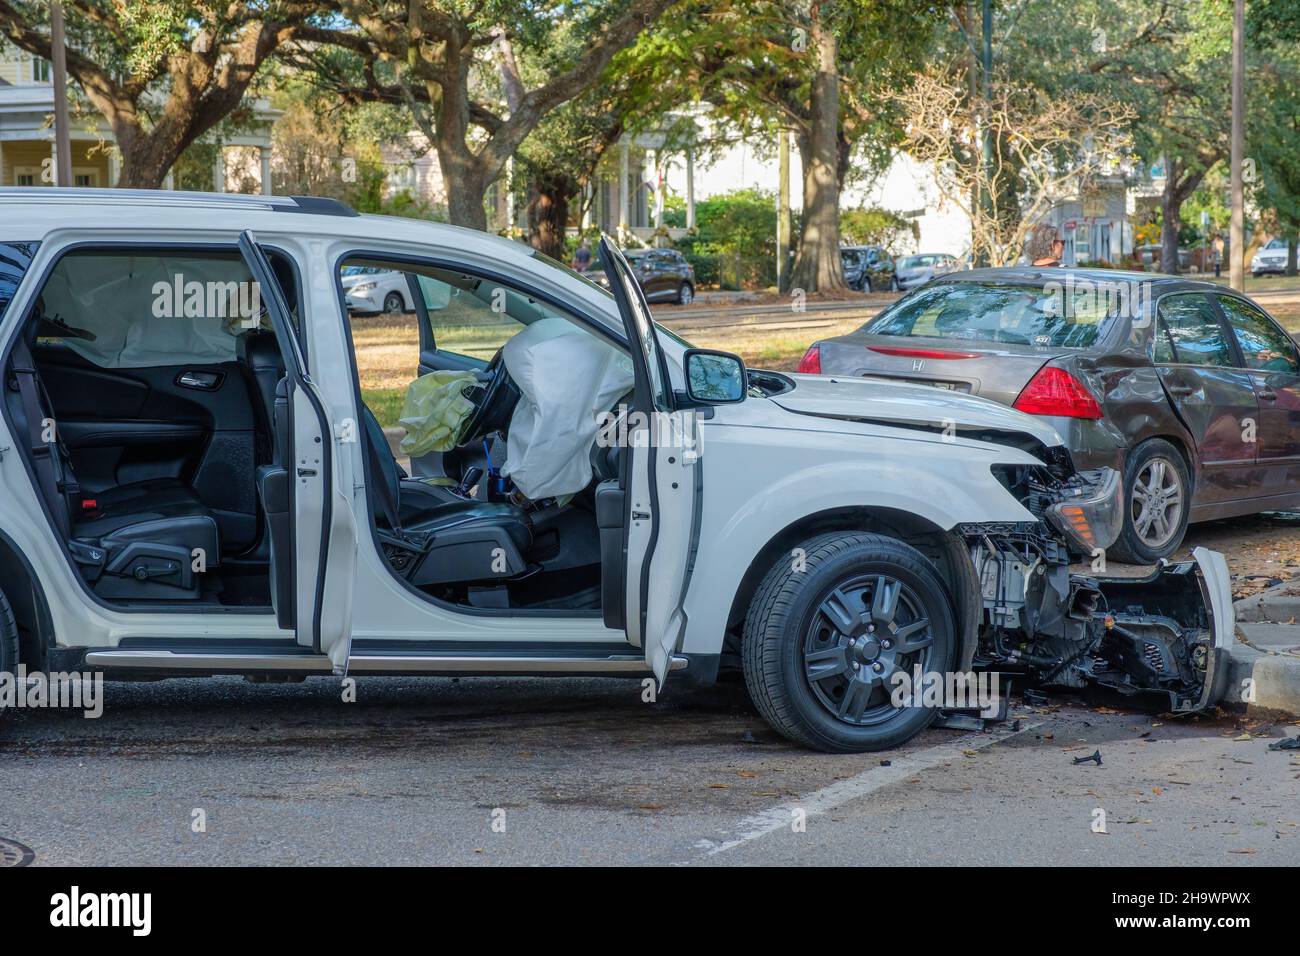 NEW ORLEANS, LA, USA - 5. DEZEMBER 2021: Nach einem Zweiwagen-Zusammenstoß auf der Carrollton Avenue, bei dem Airbags ausgelöst wurden Stockfoto